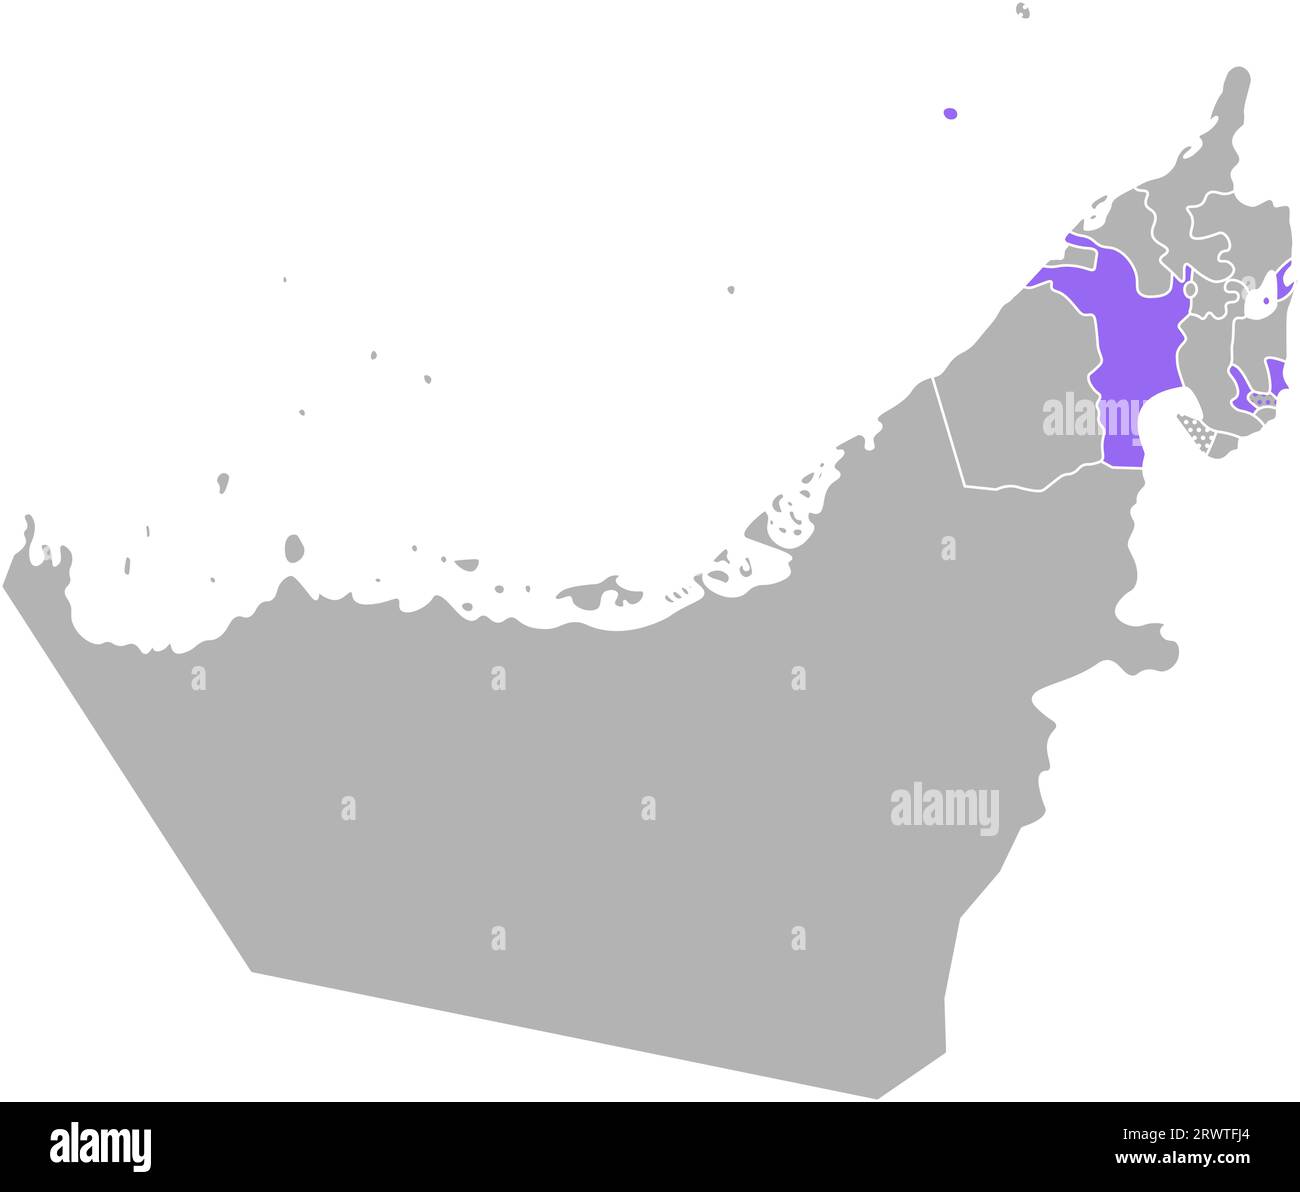 Vektor isolierte vereinfachte bunte Illustration mit grauer Silhouette der Vereinigten Arabischen Emirate (VAE), violetter Kontur der Sharjah-Region und weißem Outlin Stock Vektor